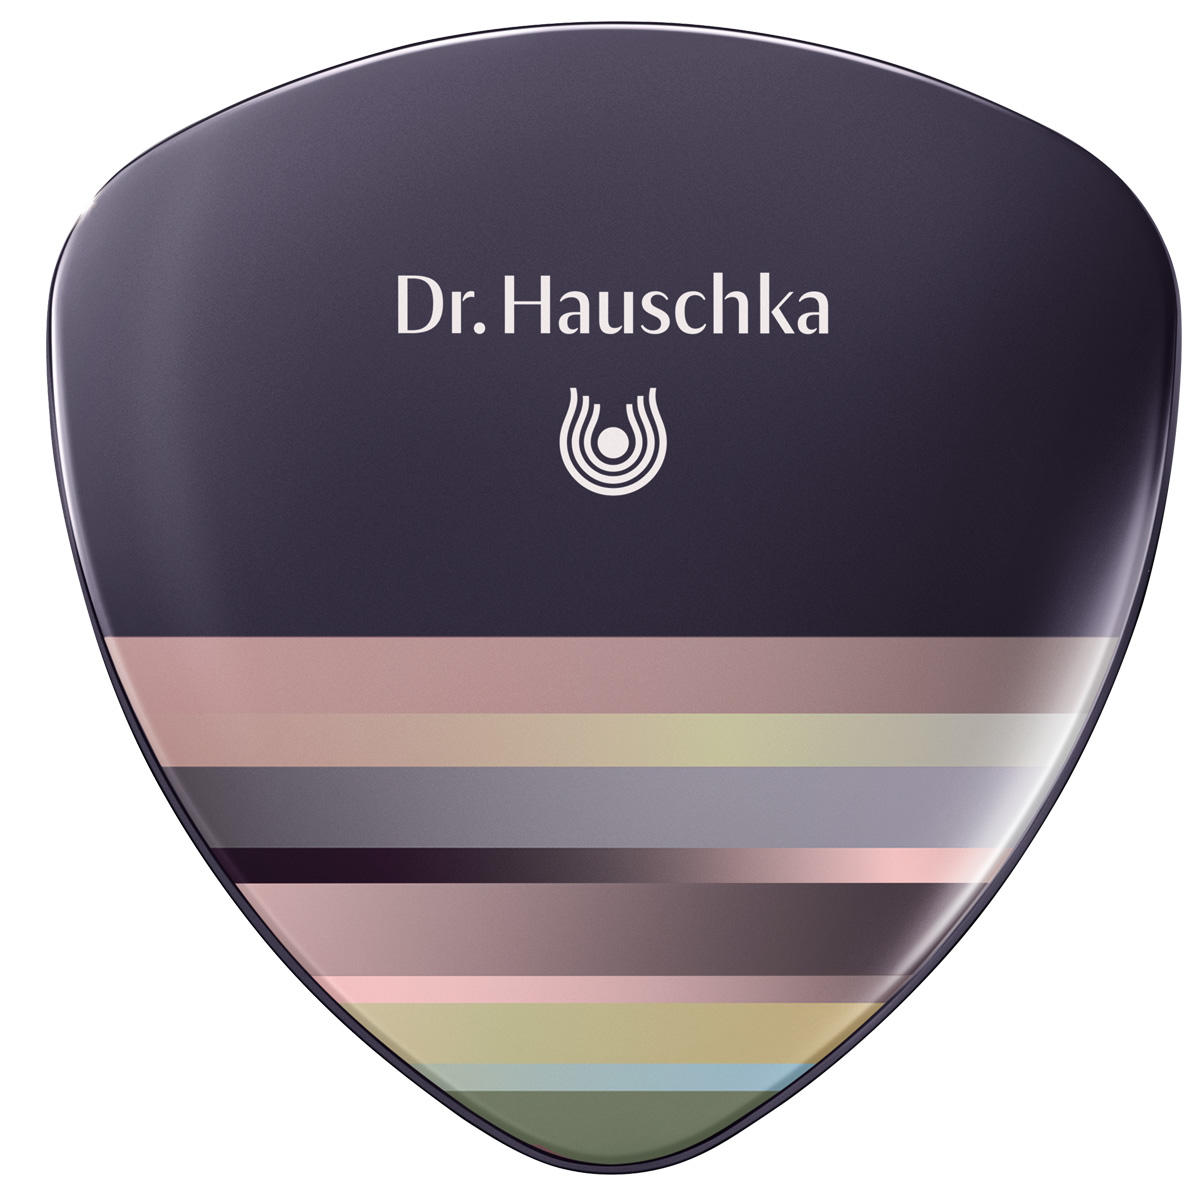 Dr. Hauschka Palette de maquillage édition limitée 9 g - 1